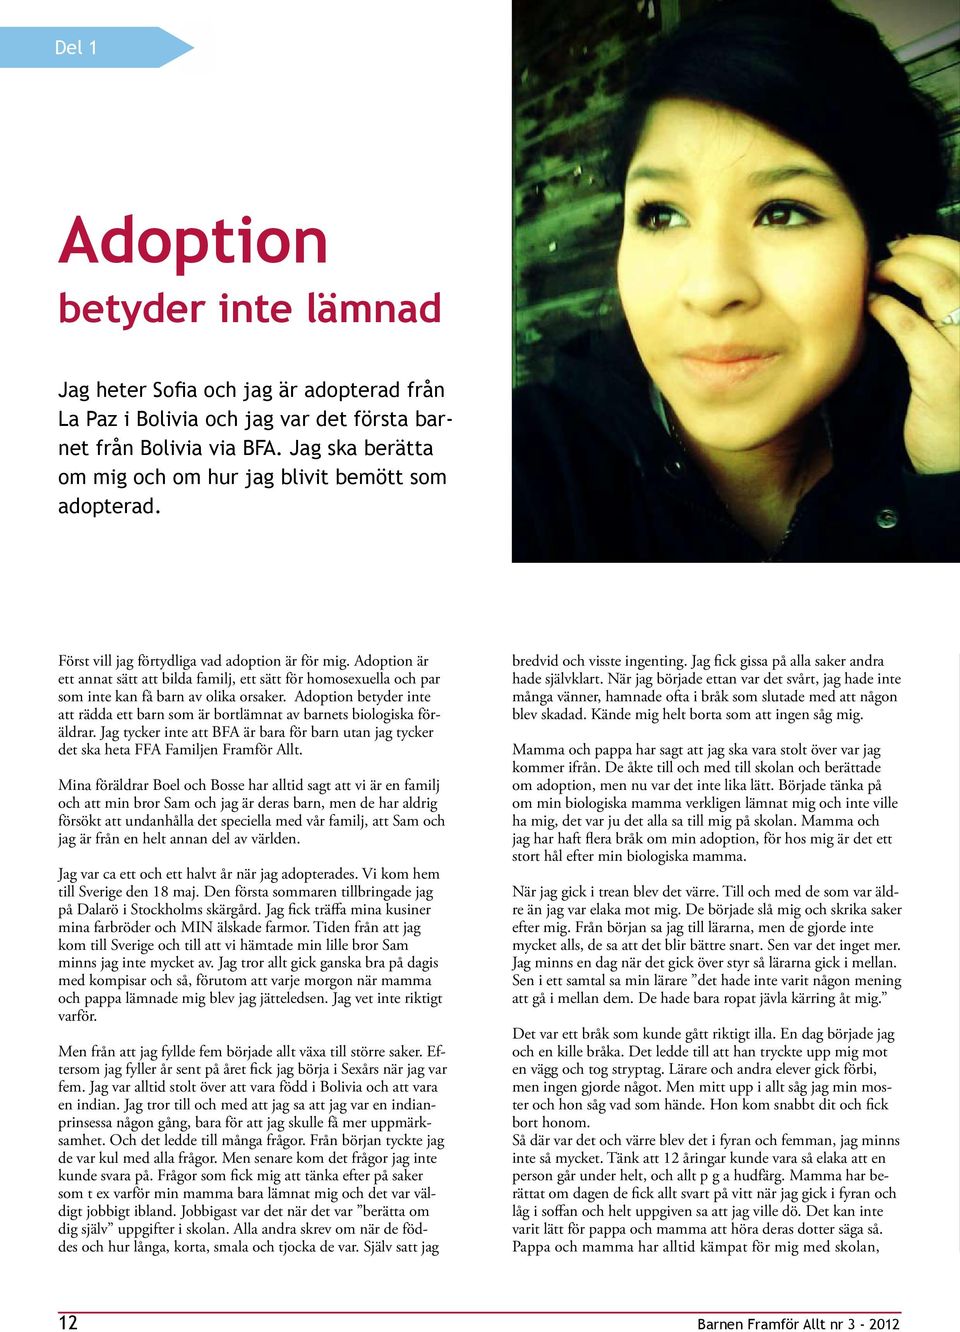 Adoption är ett annat sätt att bilda familj, ett sätt för homosexella och par som inte kan få barn av olika orsaker.